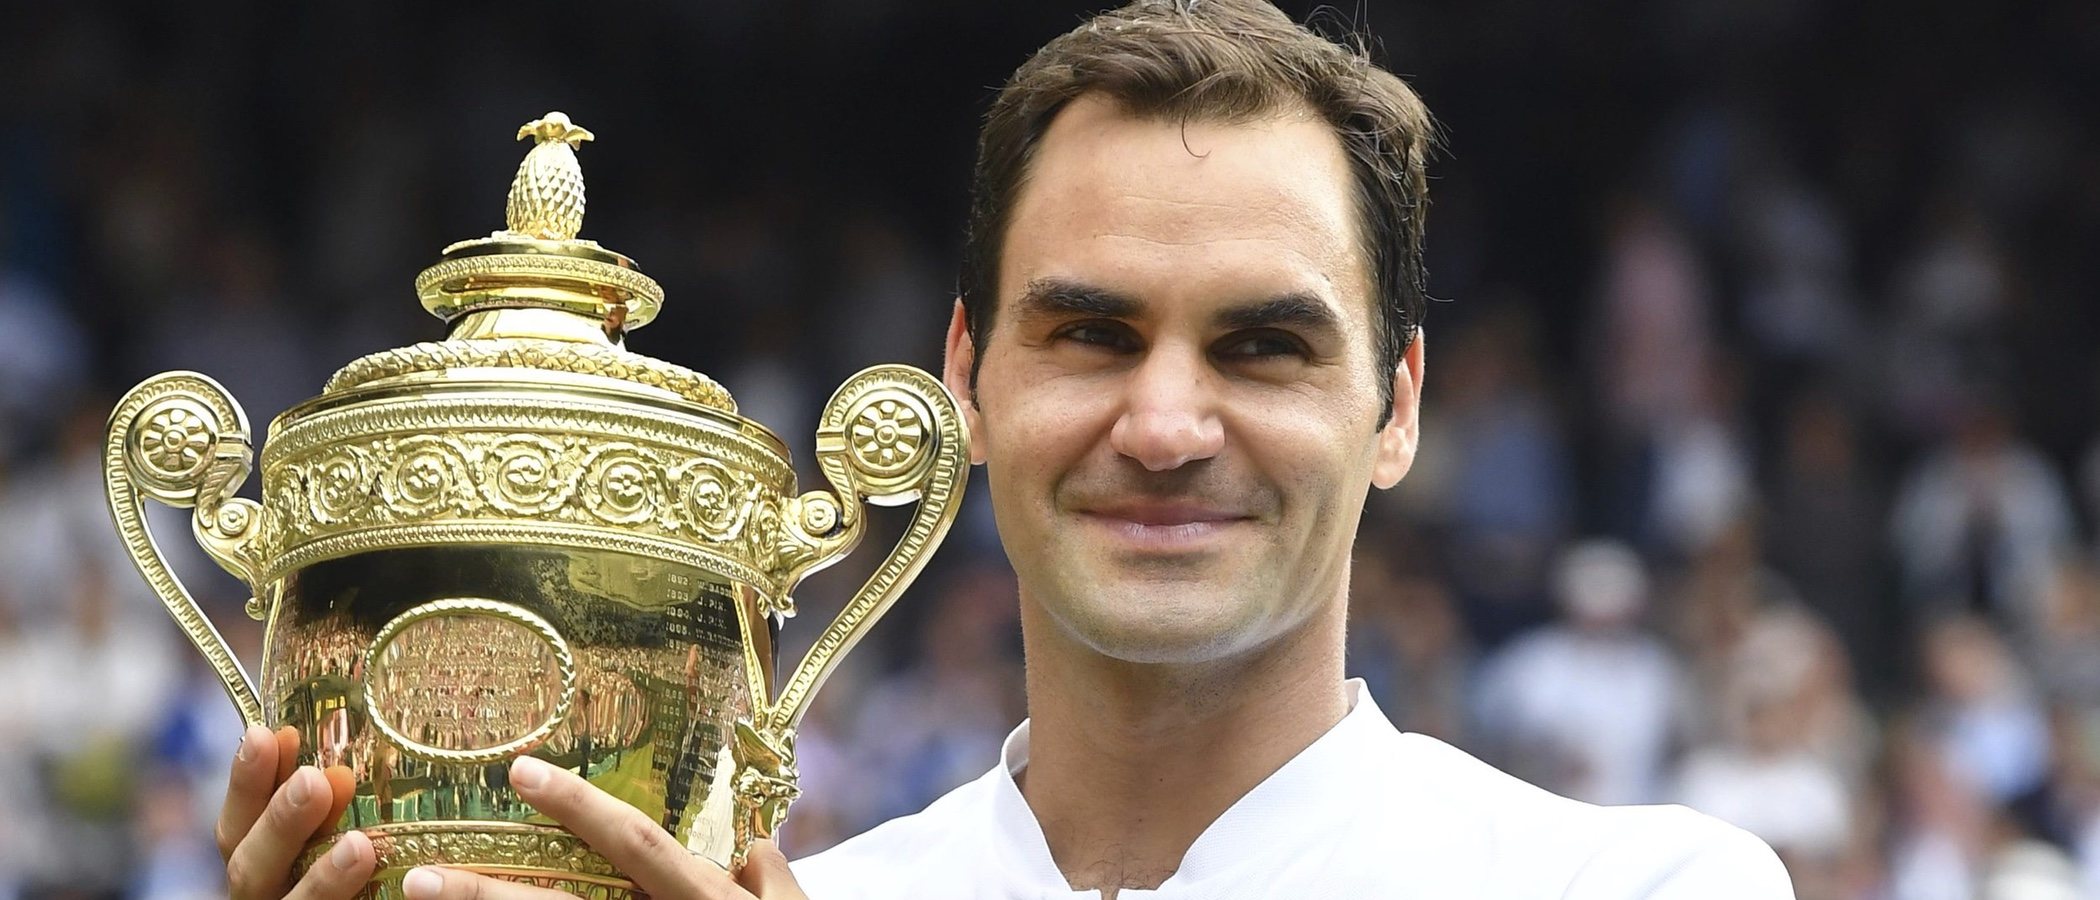 Roger Federer se estrena como embajador de Uniqlo y dice adiós a Nike